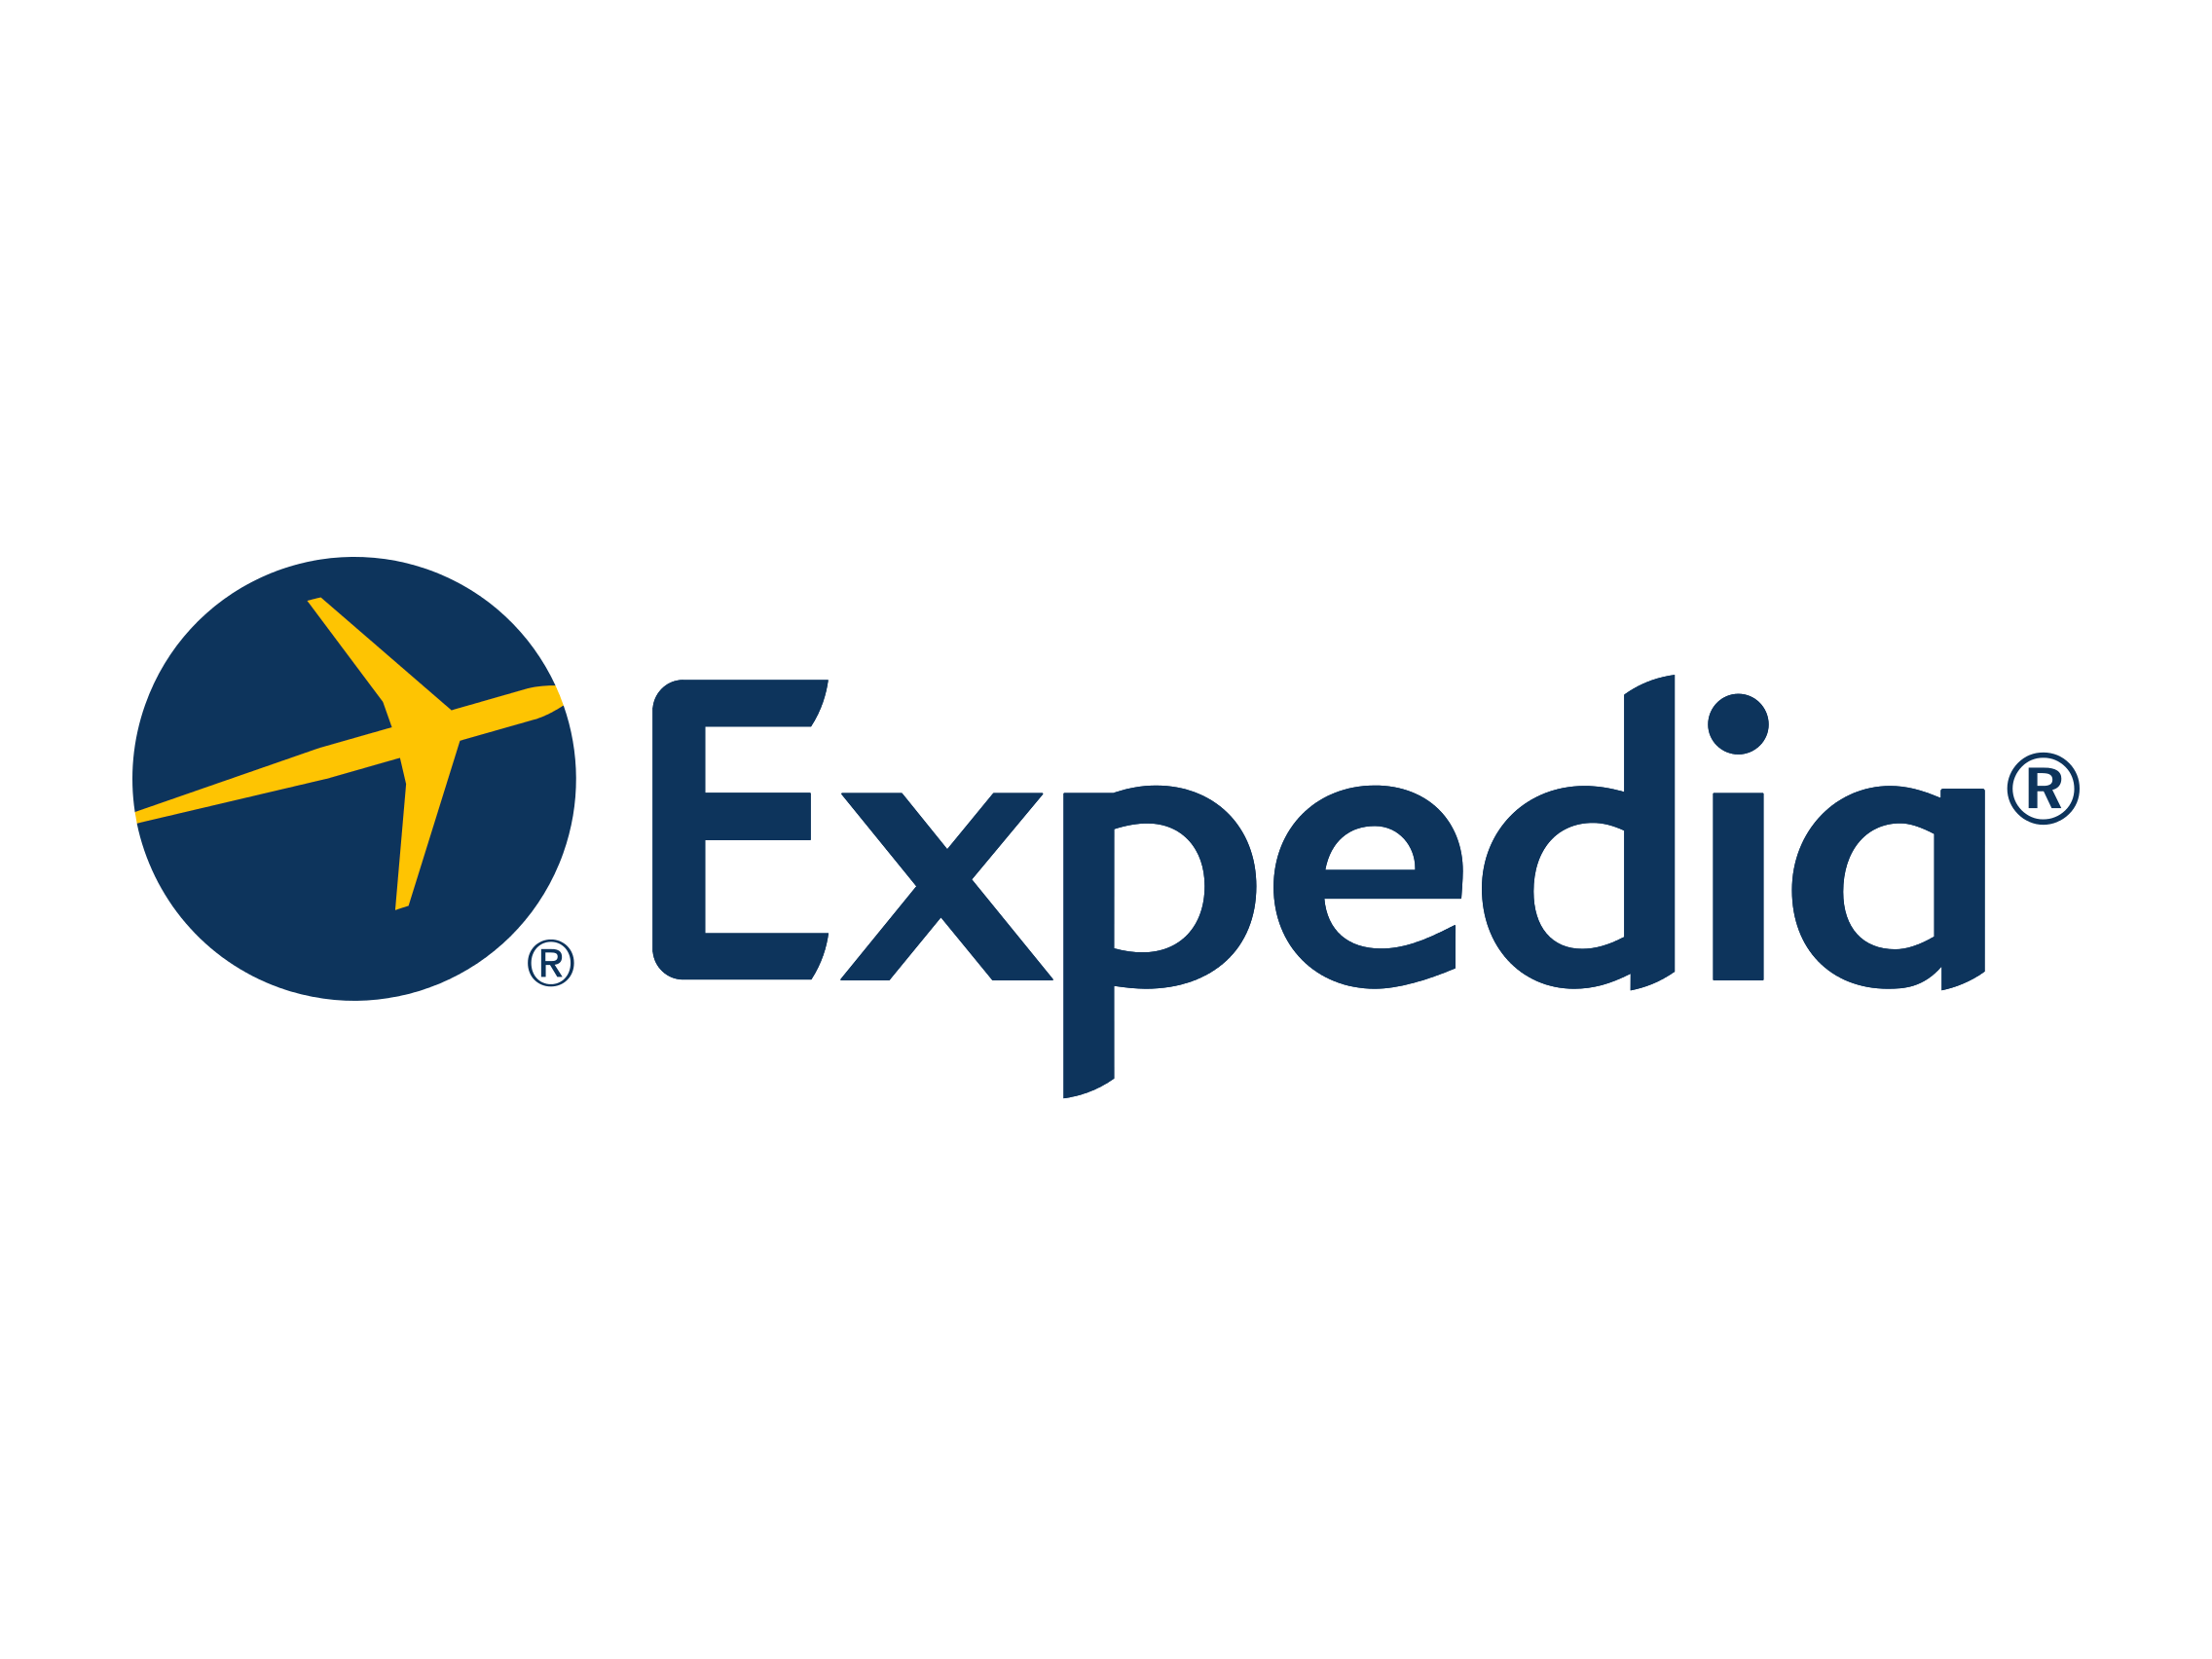 Expidia Logo - Expedia logo